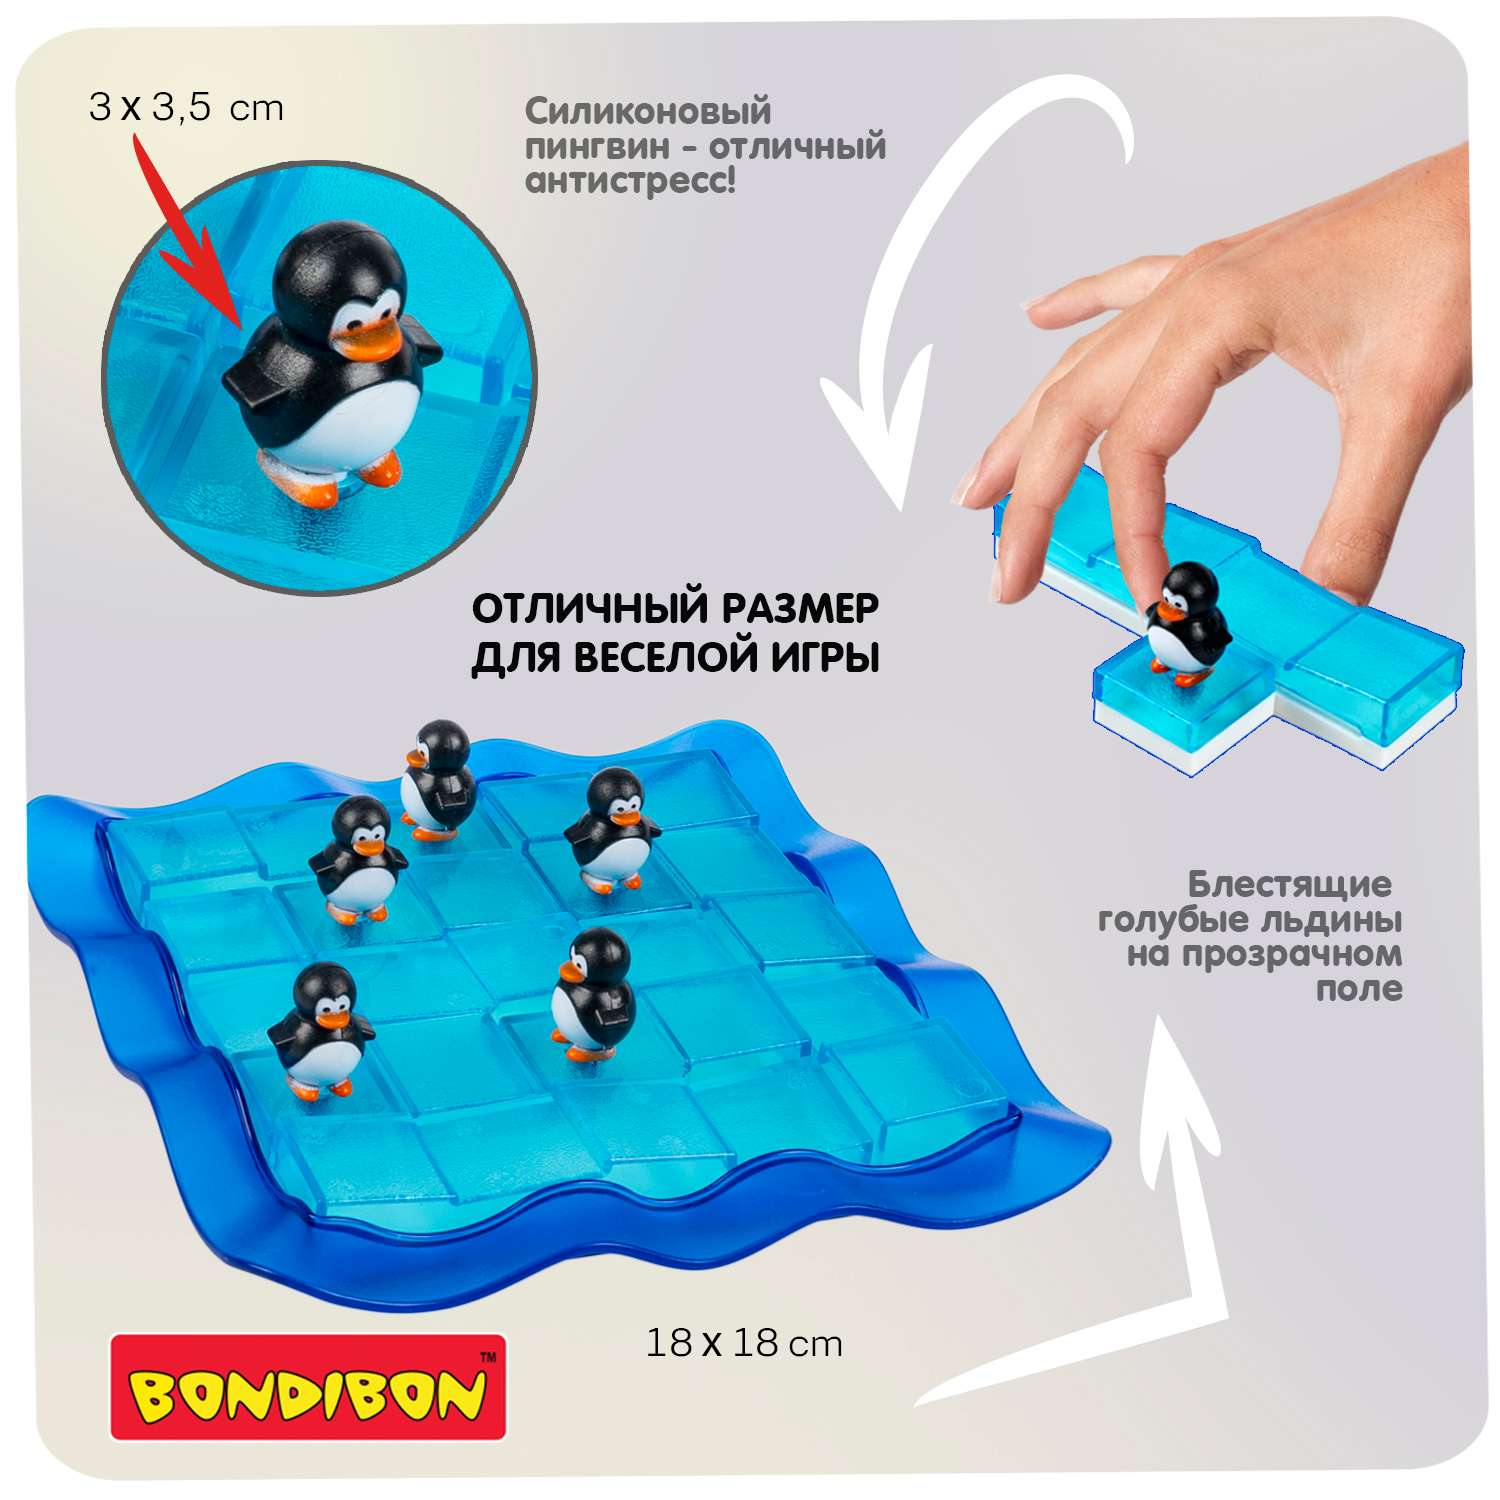 Настольная логическая игра BONDIBON головоломка Пингвины на льдинах серия БондиЛогика - фото 8